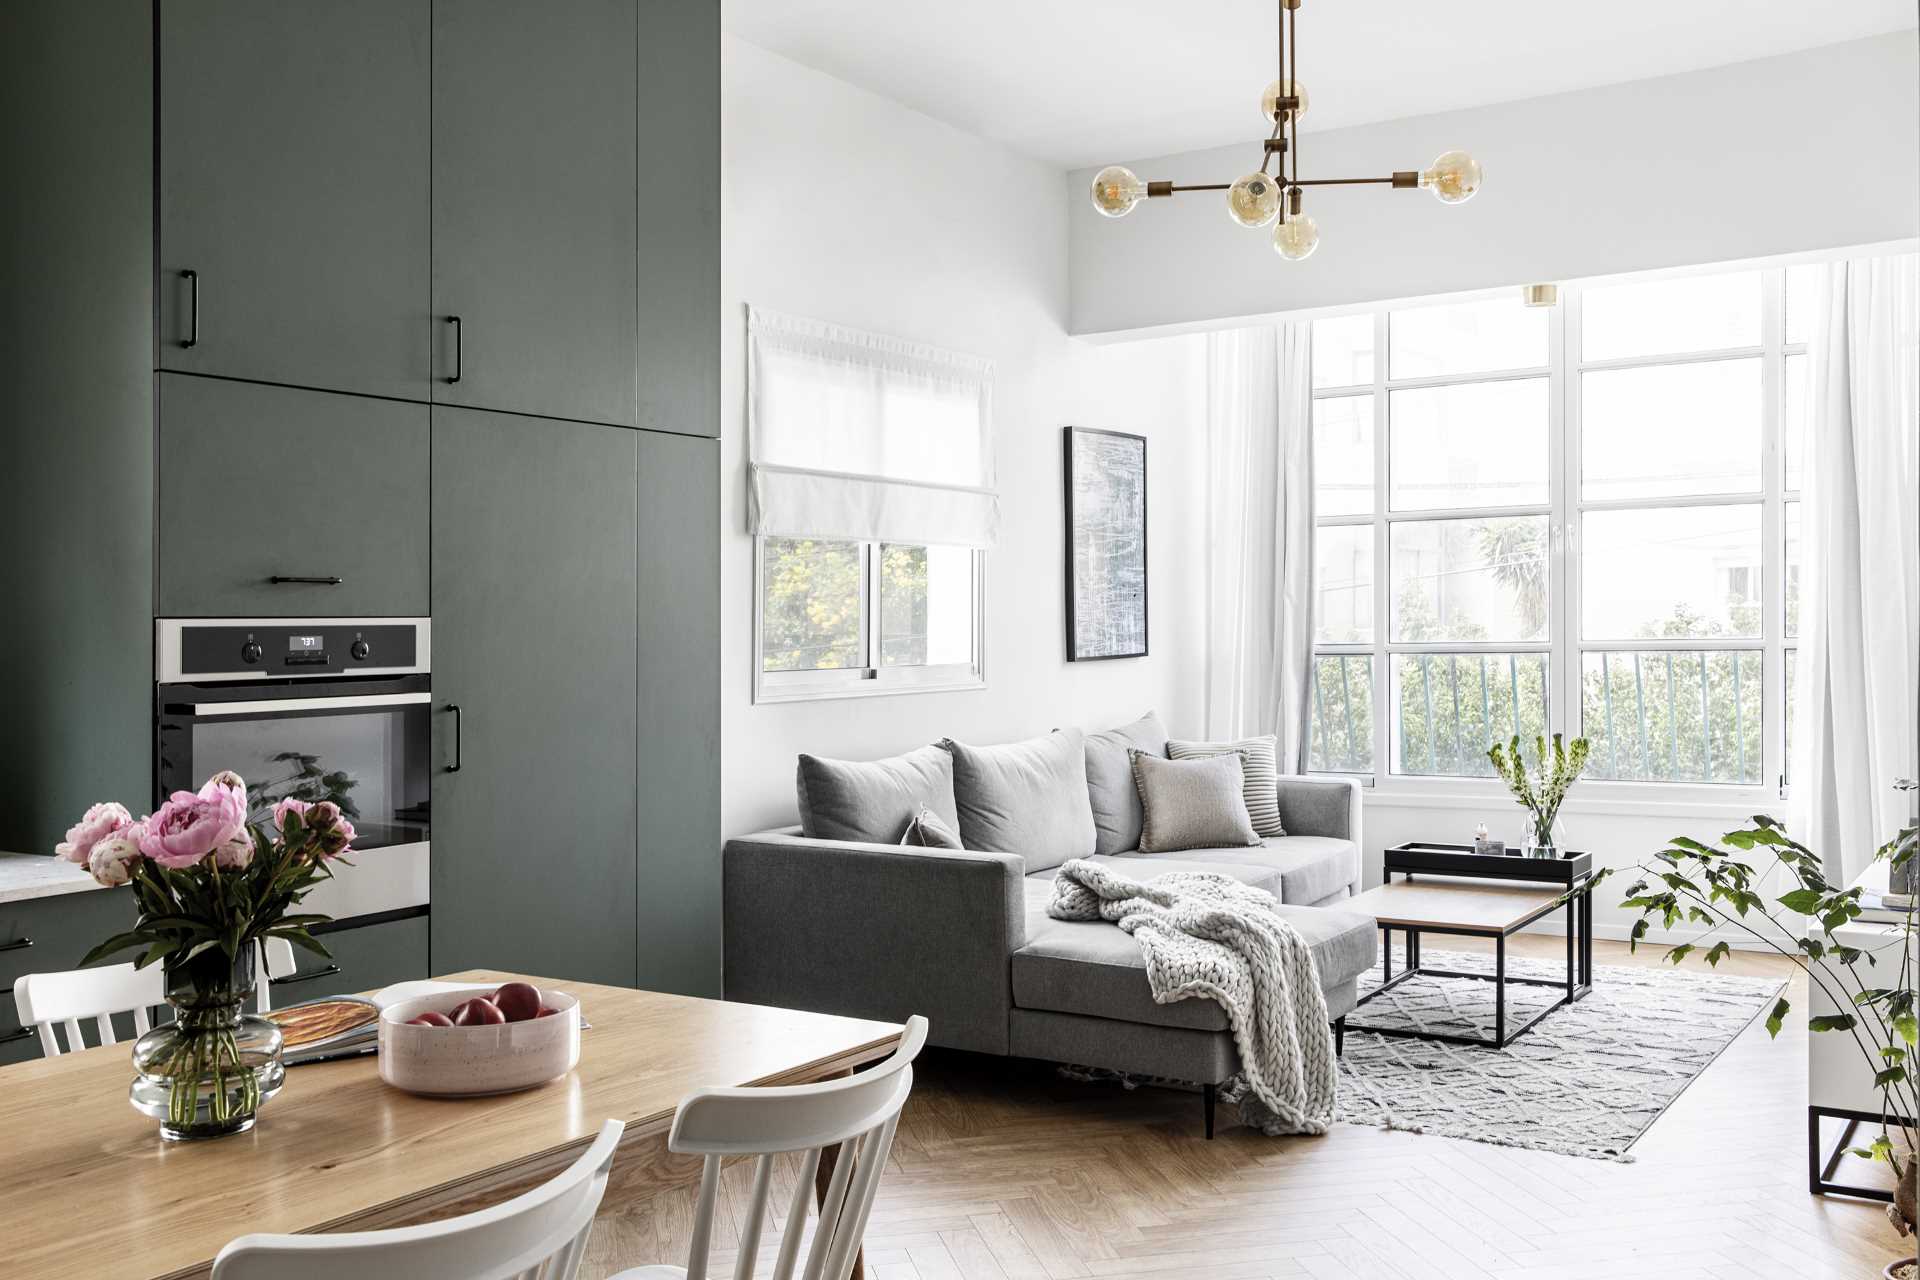 Uma sala de estar moderna com muita luz natural, um sofá cinza e plantas.